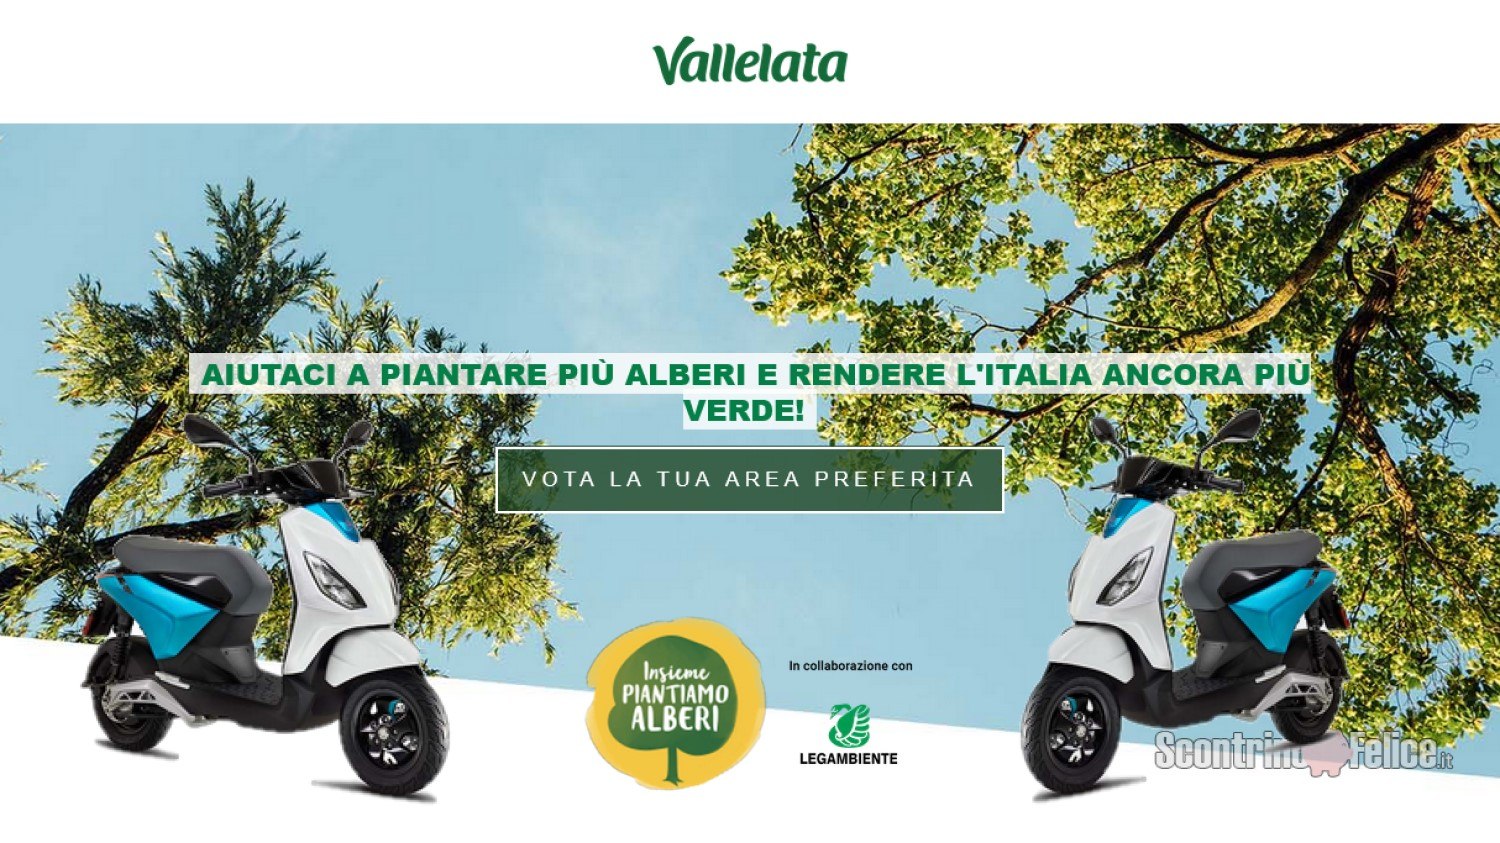 Vota la tua area preferita e vinci 5 motorini elettrici Piaggio One con Vallelata